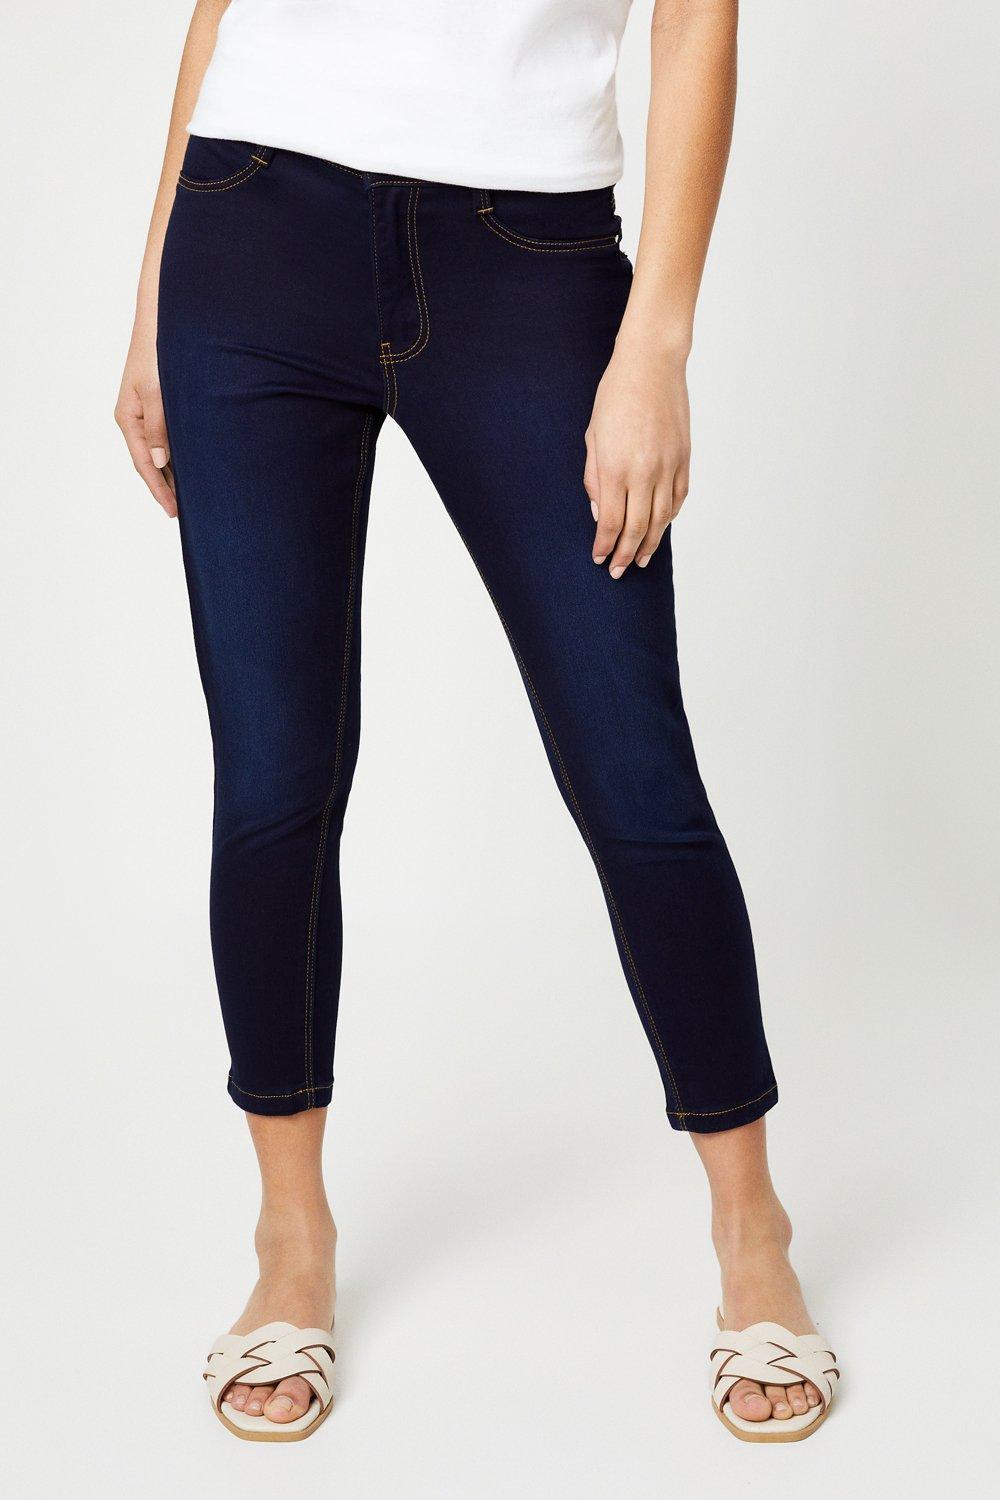 Women’s Petite Skinny Ankle Grazer Jeans - indigo - 6